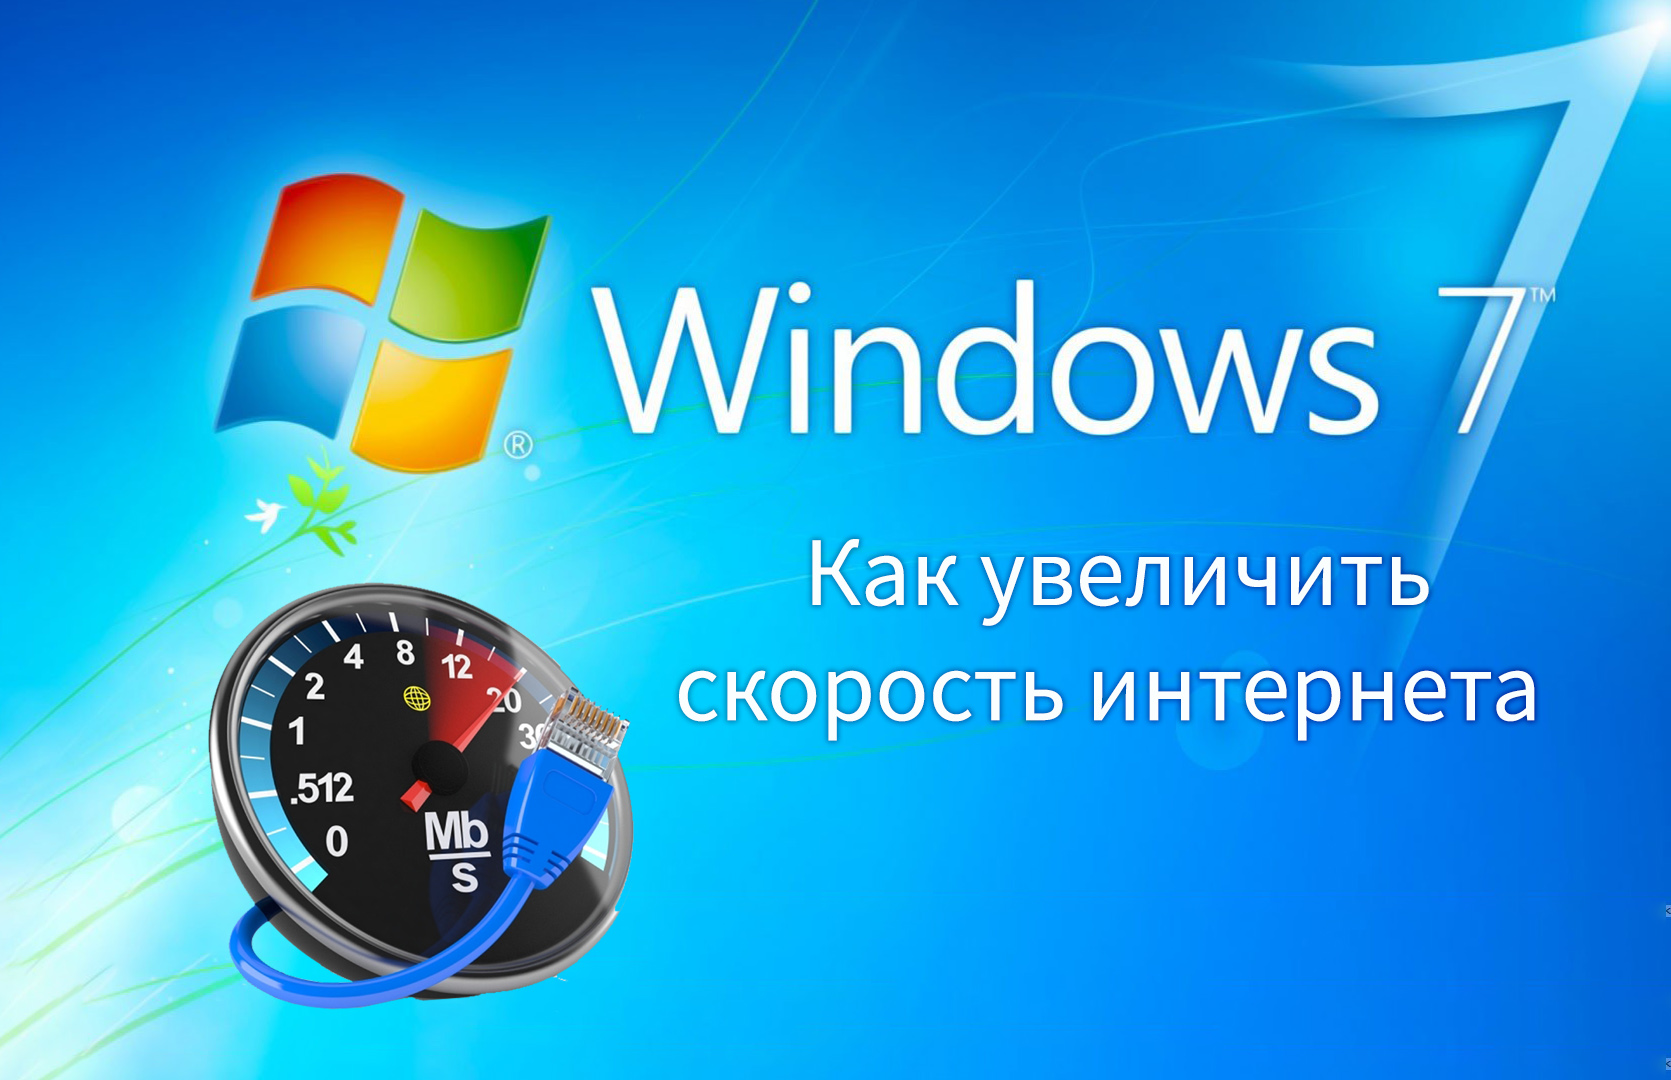 Как увеличить скорость интернета на Windows 7